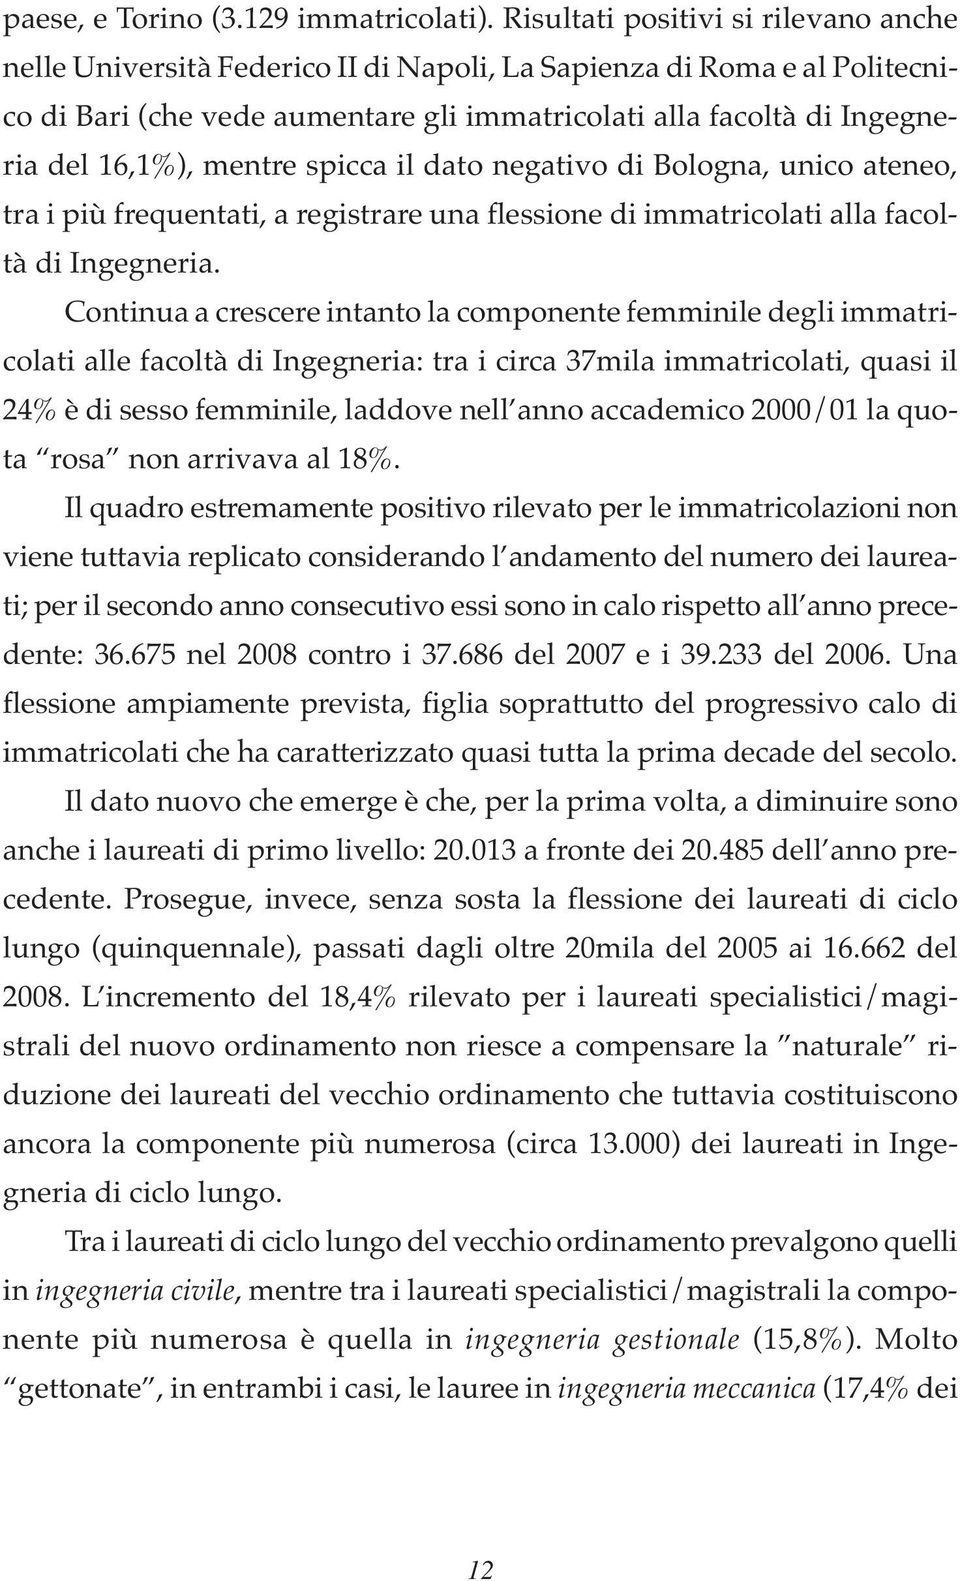 mentre spicca il dato negativo di Bologna, unico ateneo, tra i più frequentati, a registrare una flessione di immatricolati alla facoltà di Ingegneria.